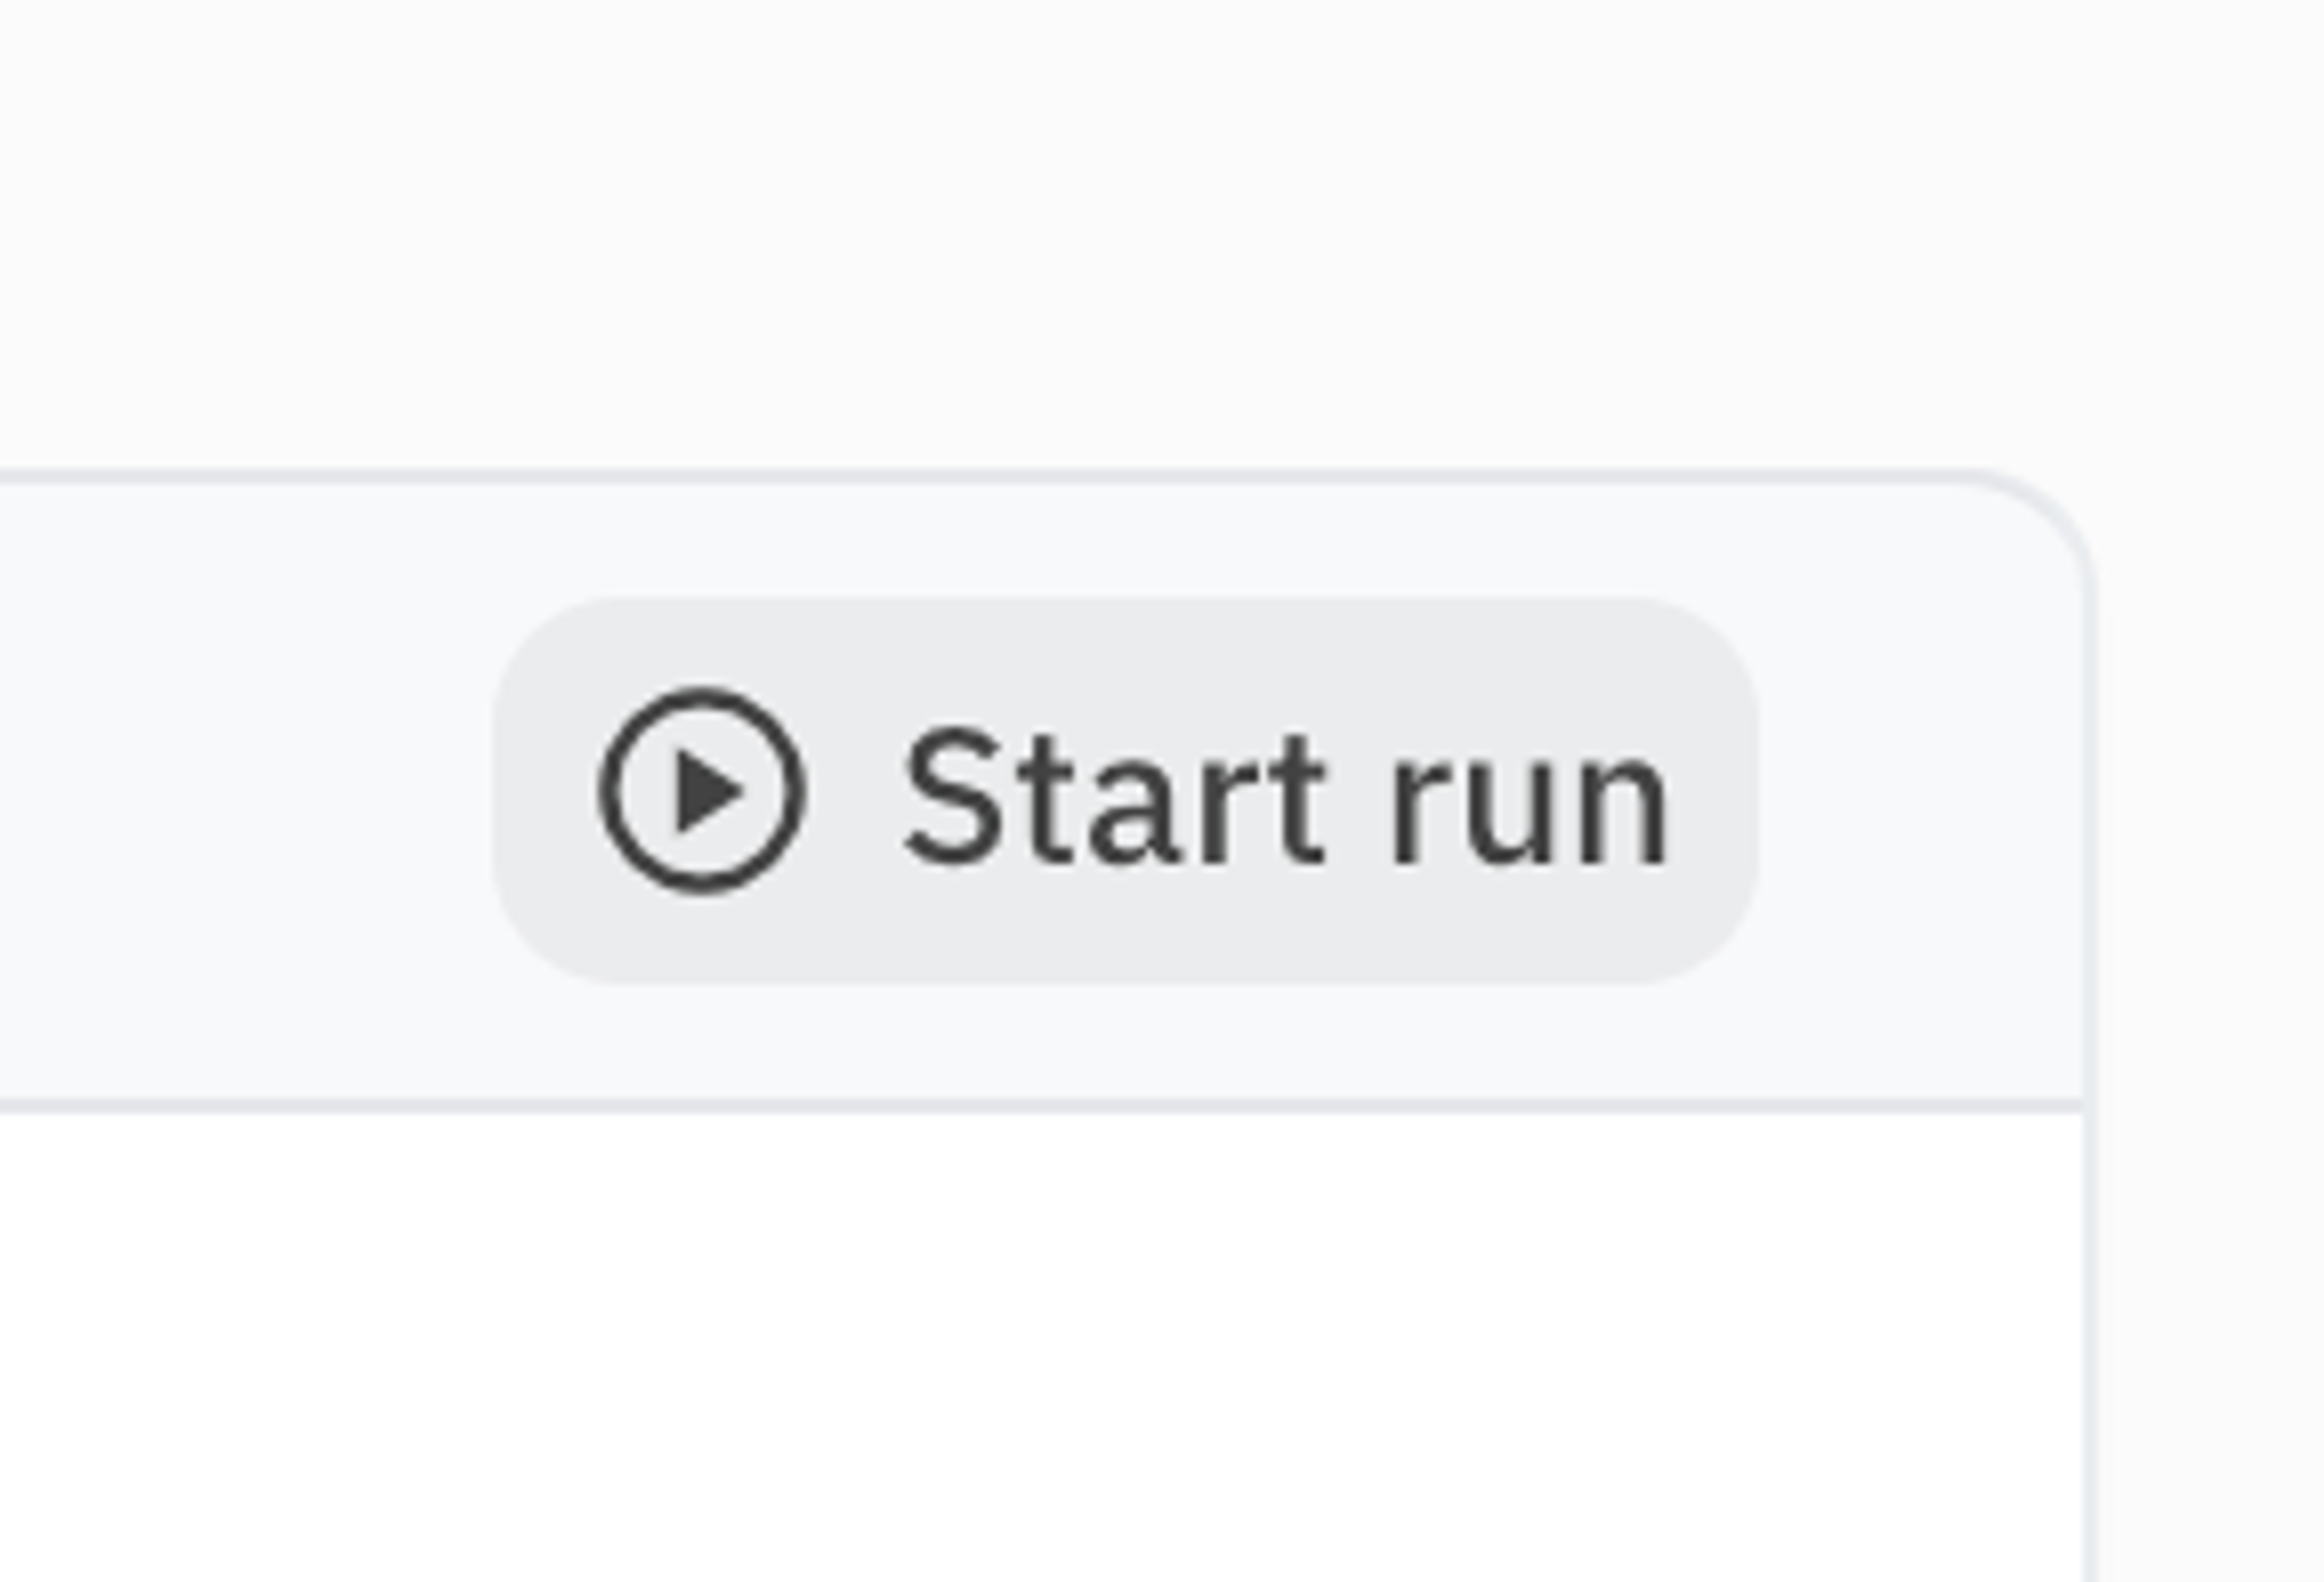 Start a batch of runs by clicking on 'Start run'